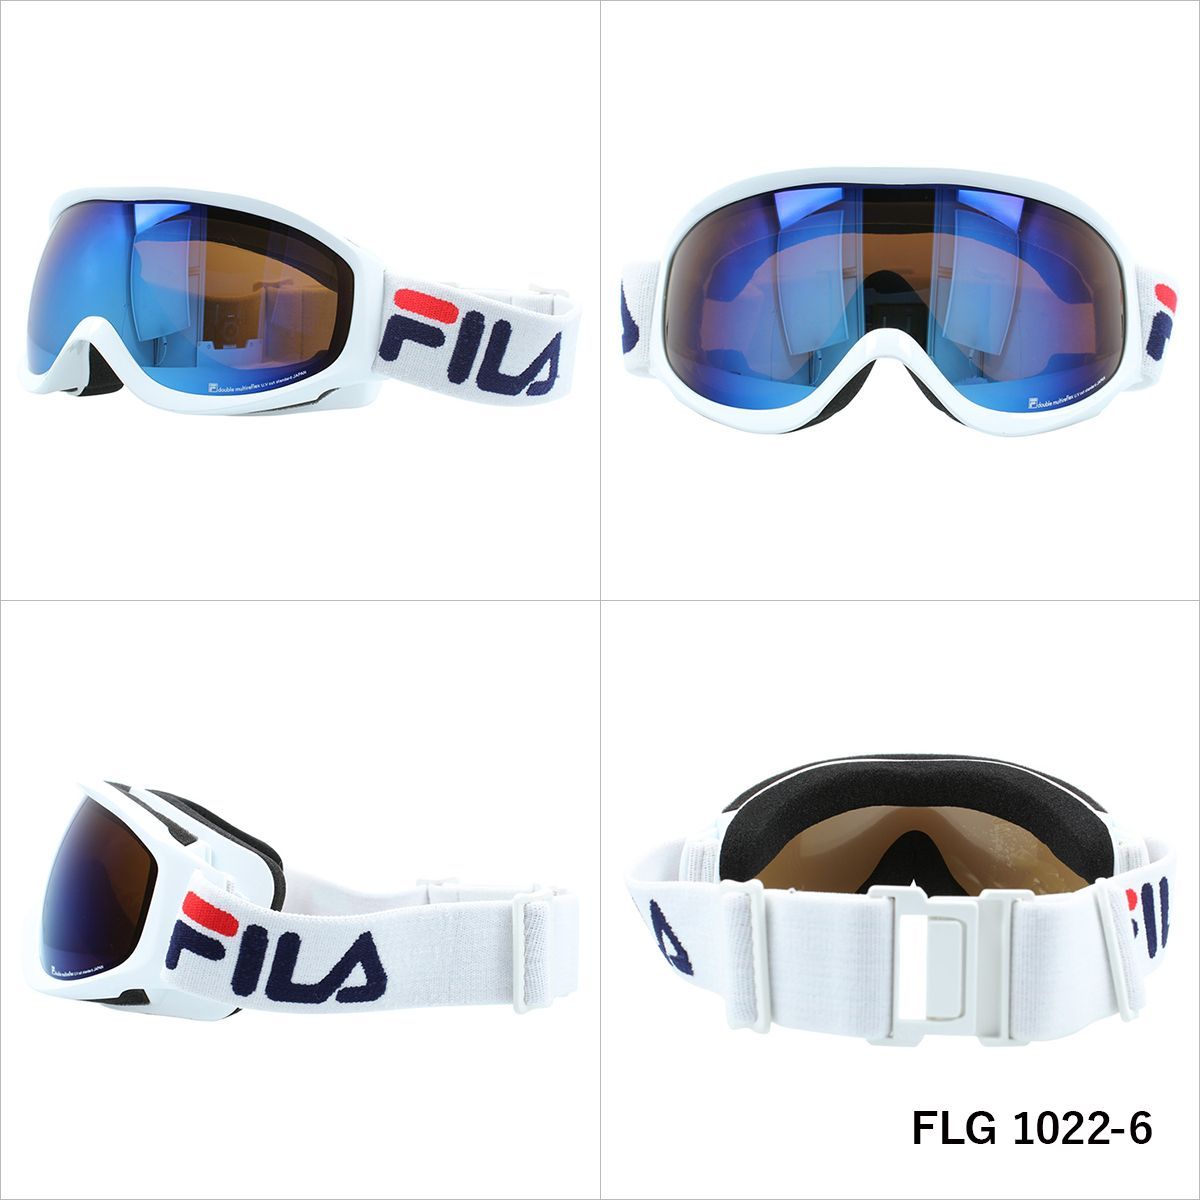 FILA フィラ FLG 1022 眼鏡対応 ミラーレンズ スノーゴーグル スキー スノーボード スノボ 球面ダブルレンズ フレームあり メンズ レディース ウィンタースポーツ 曇り防止 曇り止め 誕生日 プレゼント 男性 女性